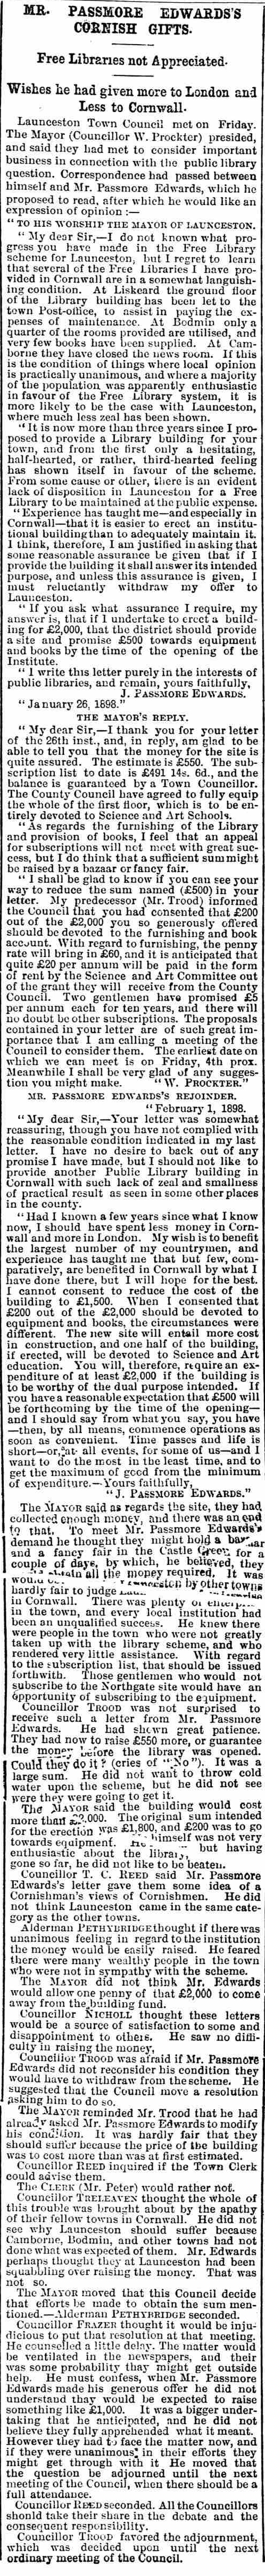  10 February 1898